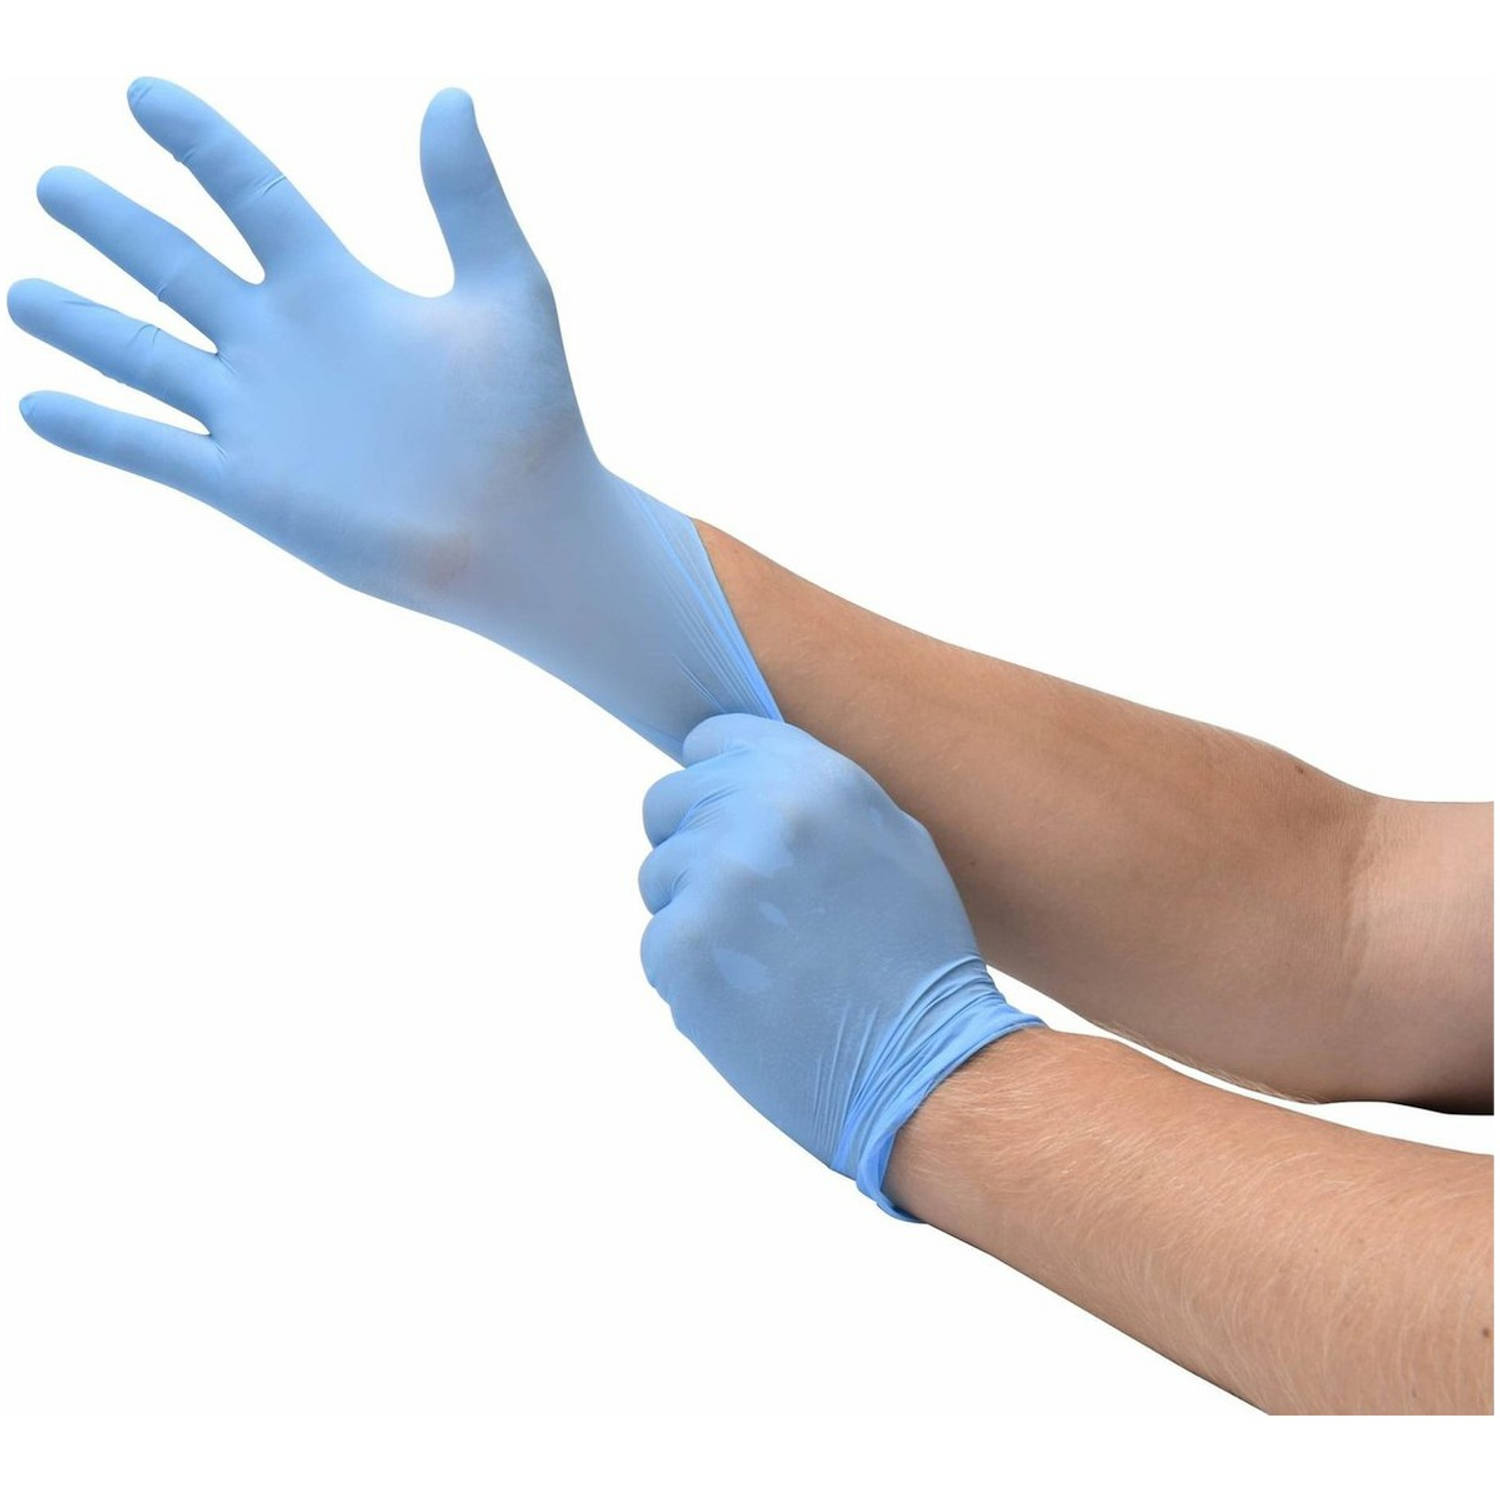 Soft Nitrile blauwe handschoenen voor persoonlijke en medische bescherming - Maat XL (extra large) – 100 stuks